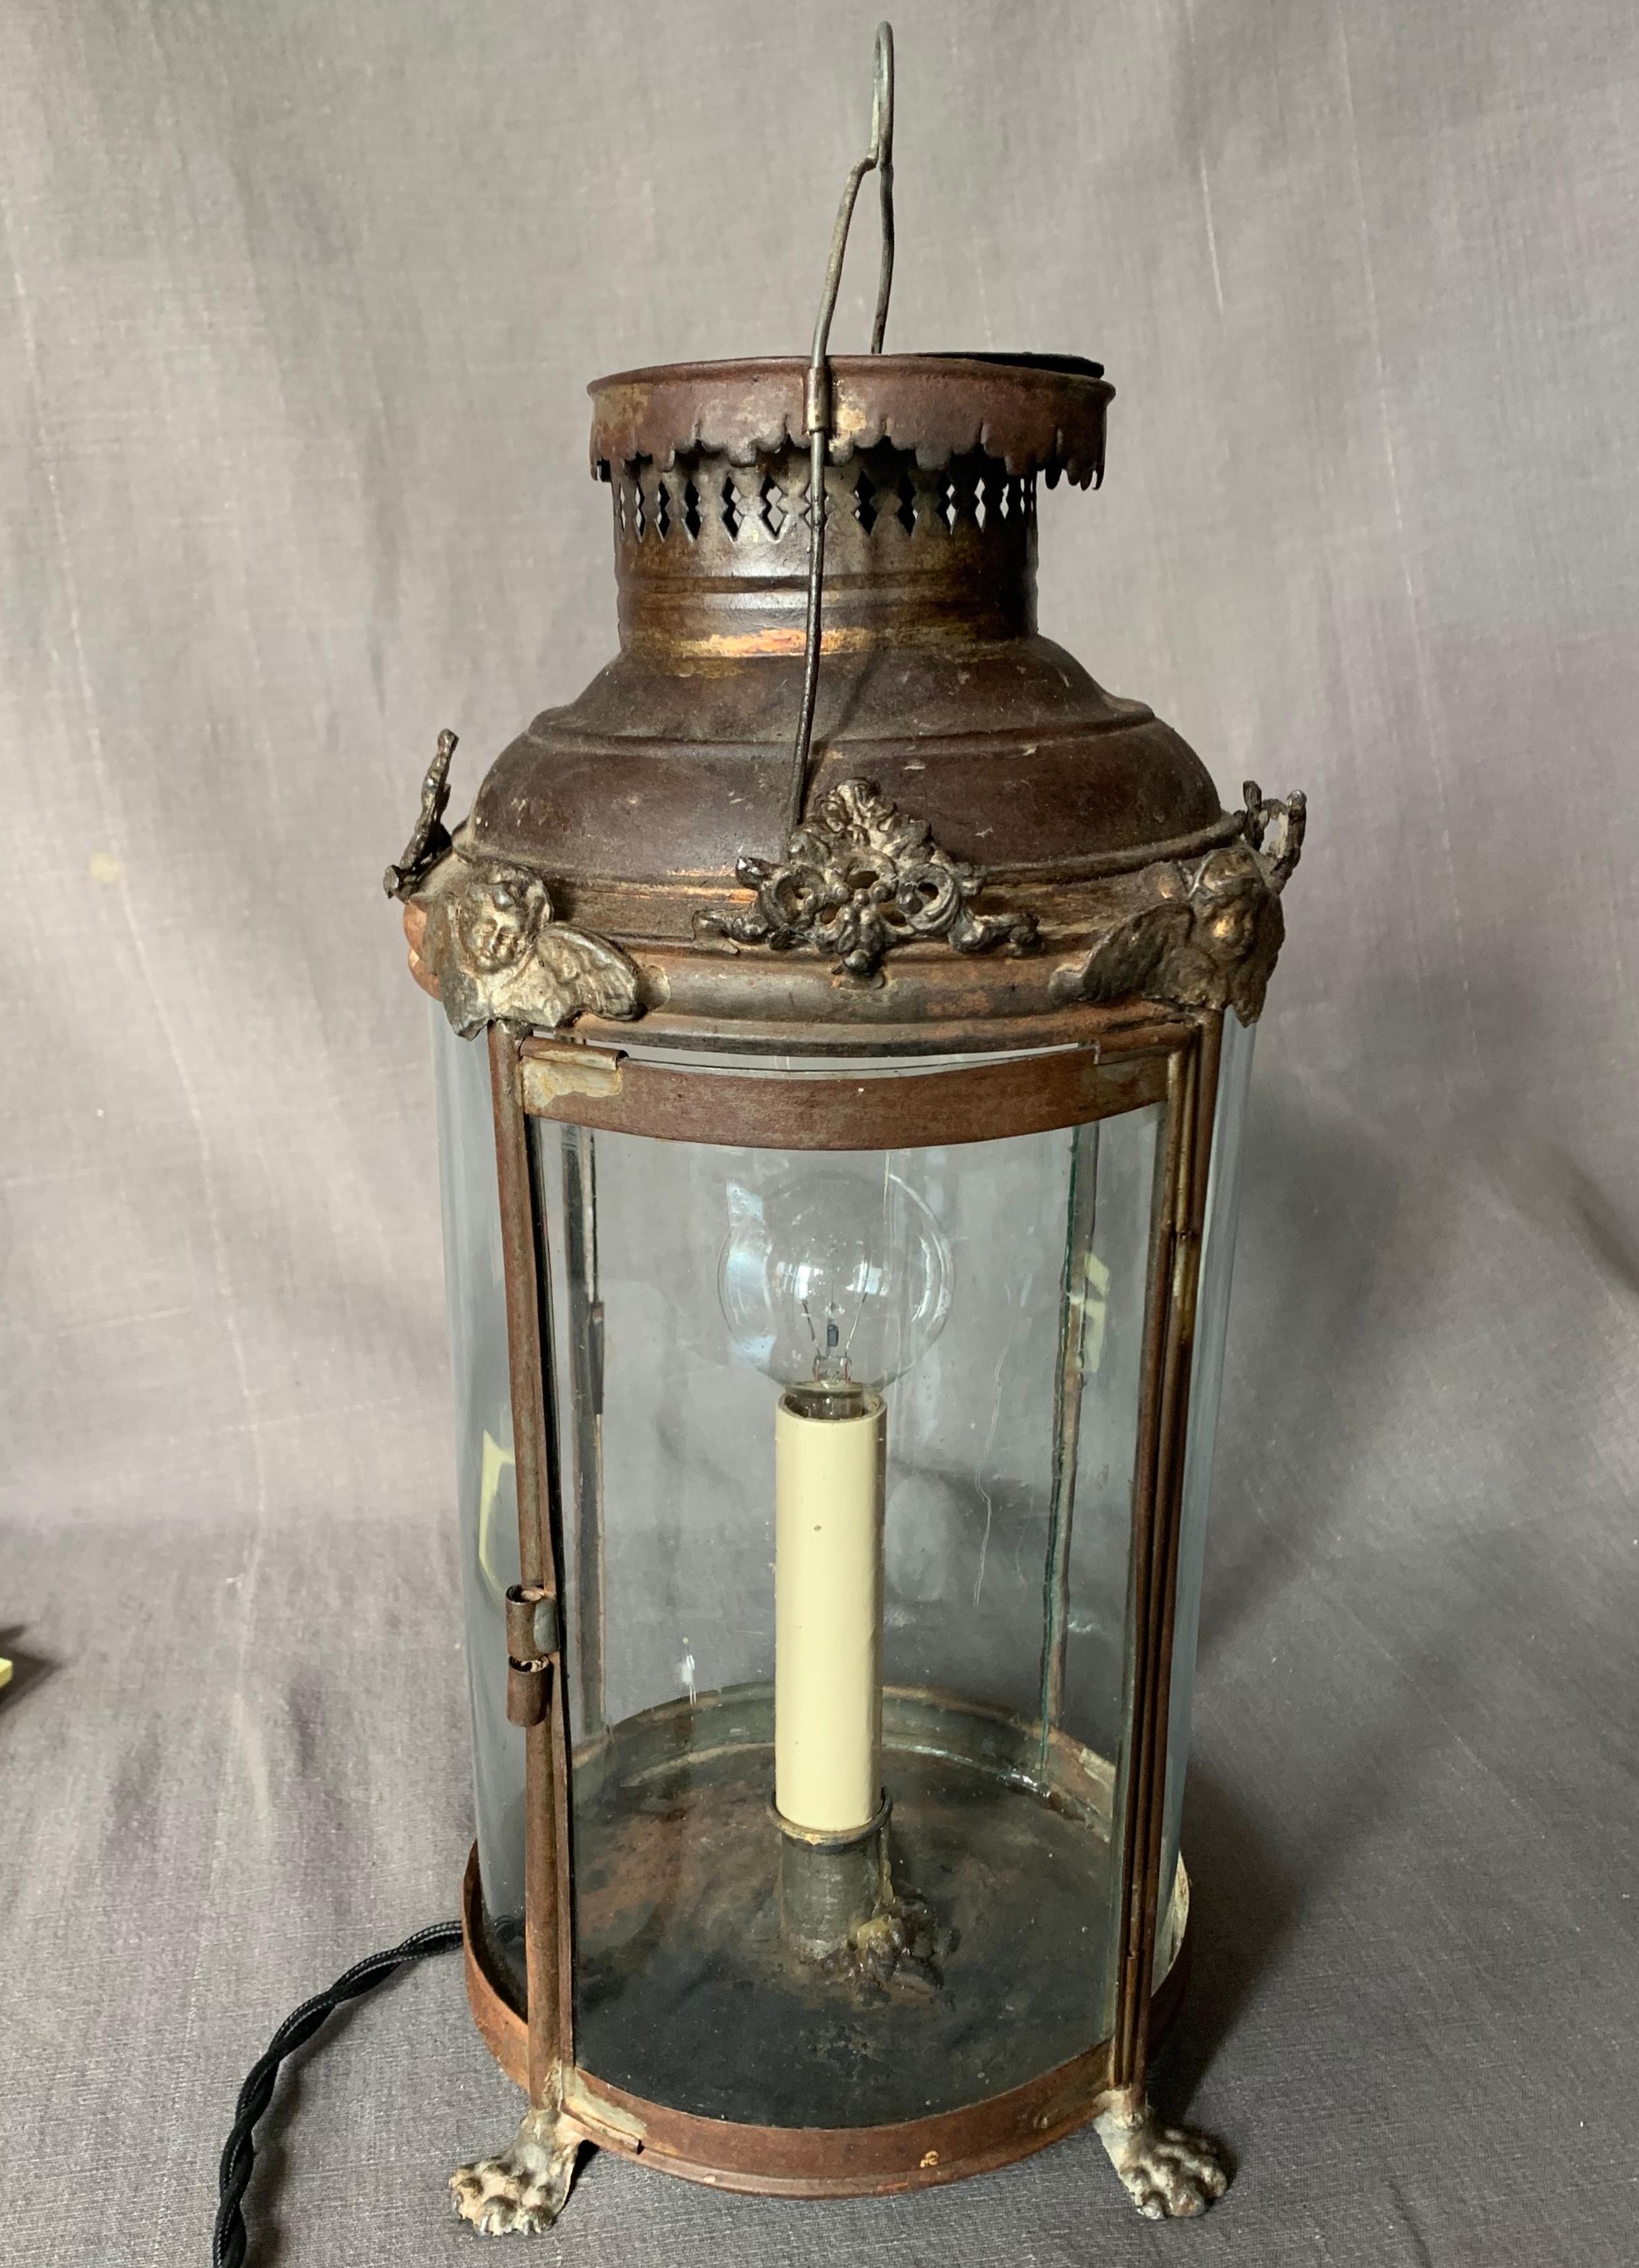 Lampe lanterne en forme de tole française. Ancien chandelier lanterne à pied en or brun patiné, avec des panneaux originaux en verre courbé à graines, avec un capuchon de ventilation percé surmonté de chérubins et de rinceaux feuillus, nouvellement